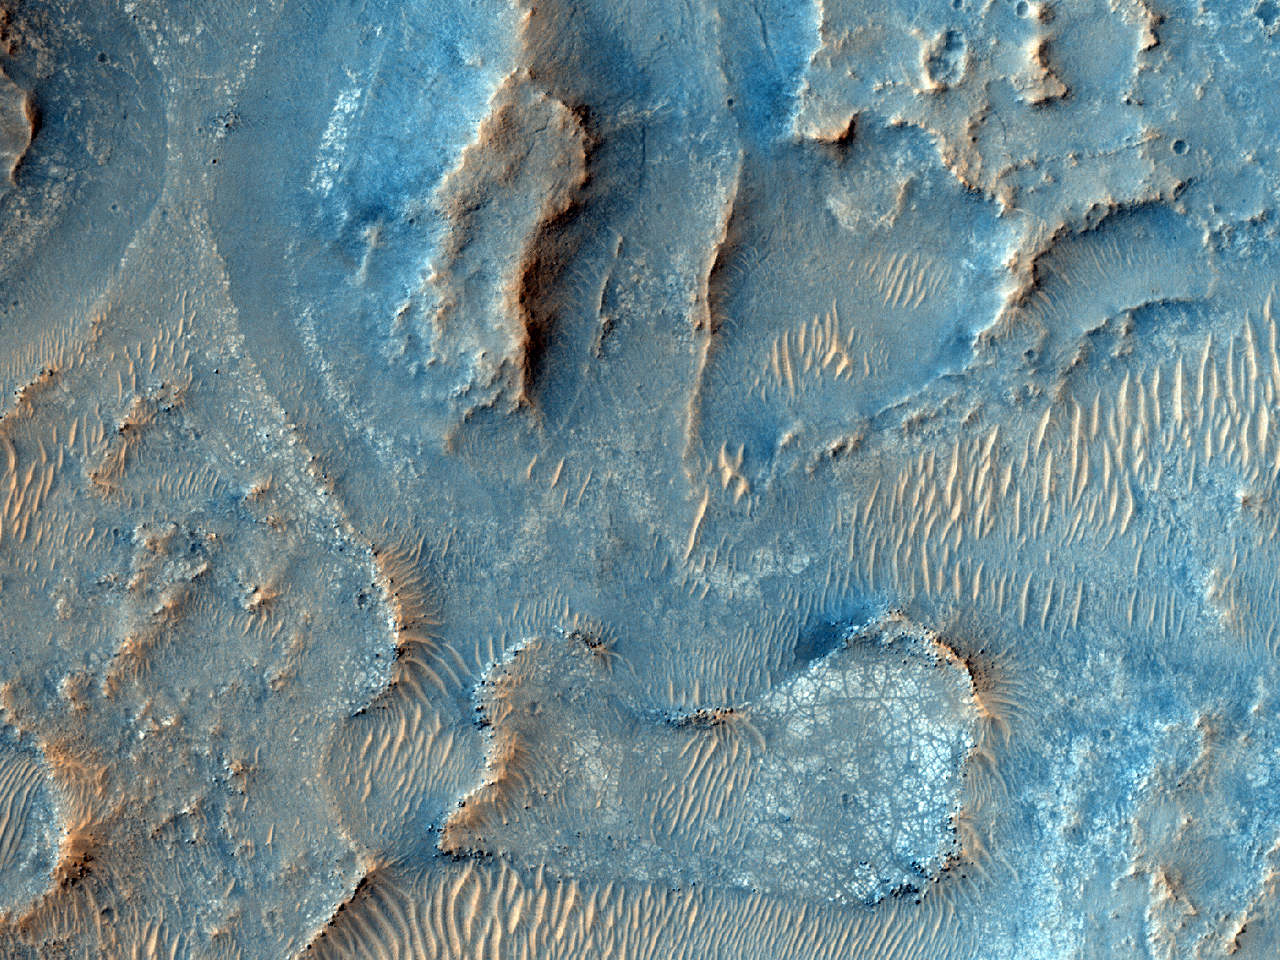 Tervezett kutatási terület a Mars 2020 küldetés számára a Jezero kráter közelében